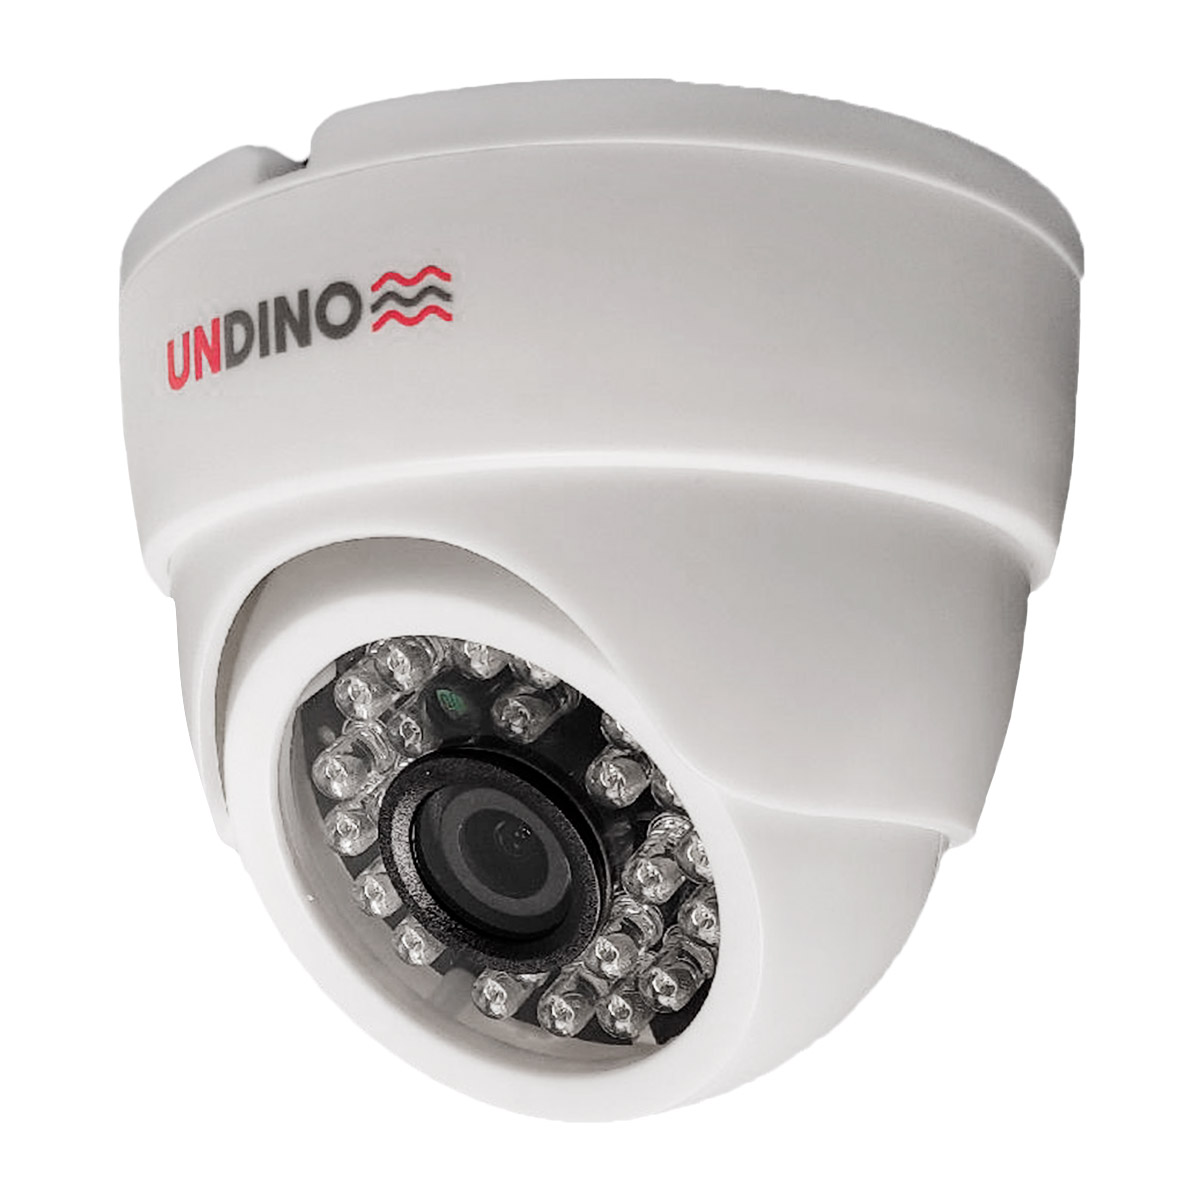 Купольная камера видеонаблюдения IP 5Мп Undino UD-ED05IP цифровая с POE питанием intelligent arlight панель dali 223 1g 4sc in bus только сцены arlight